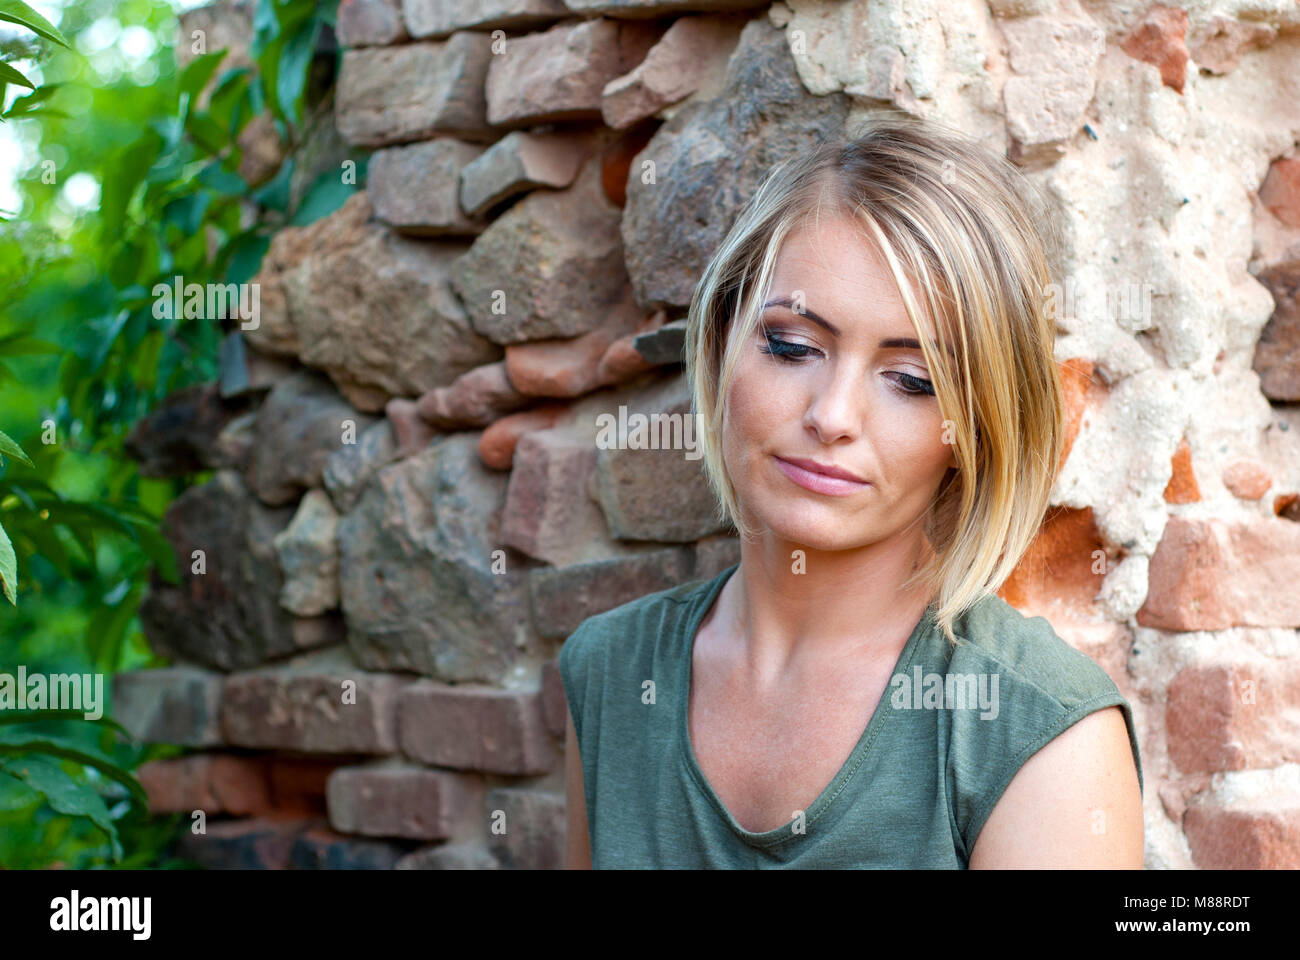 Portrait de plein air d'un triste, moody ou déprimés, belle blonde woman Banque D'Images